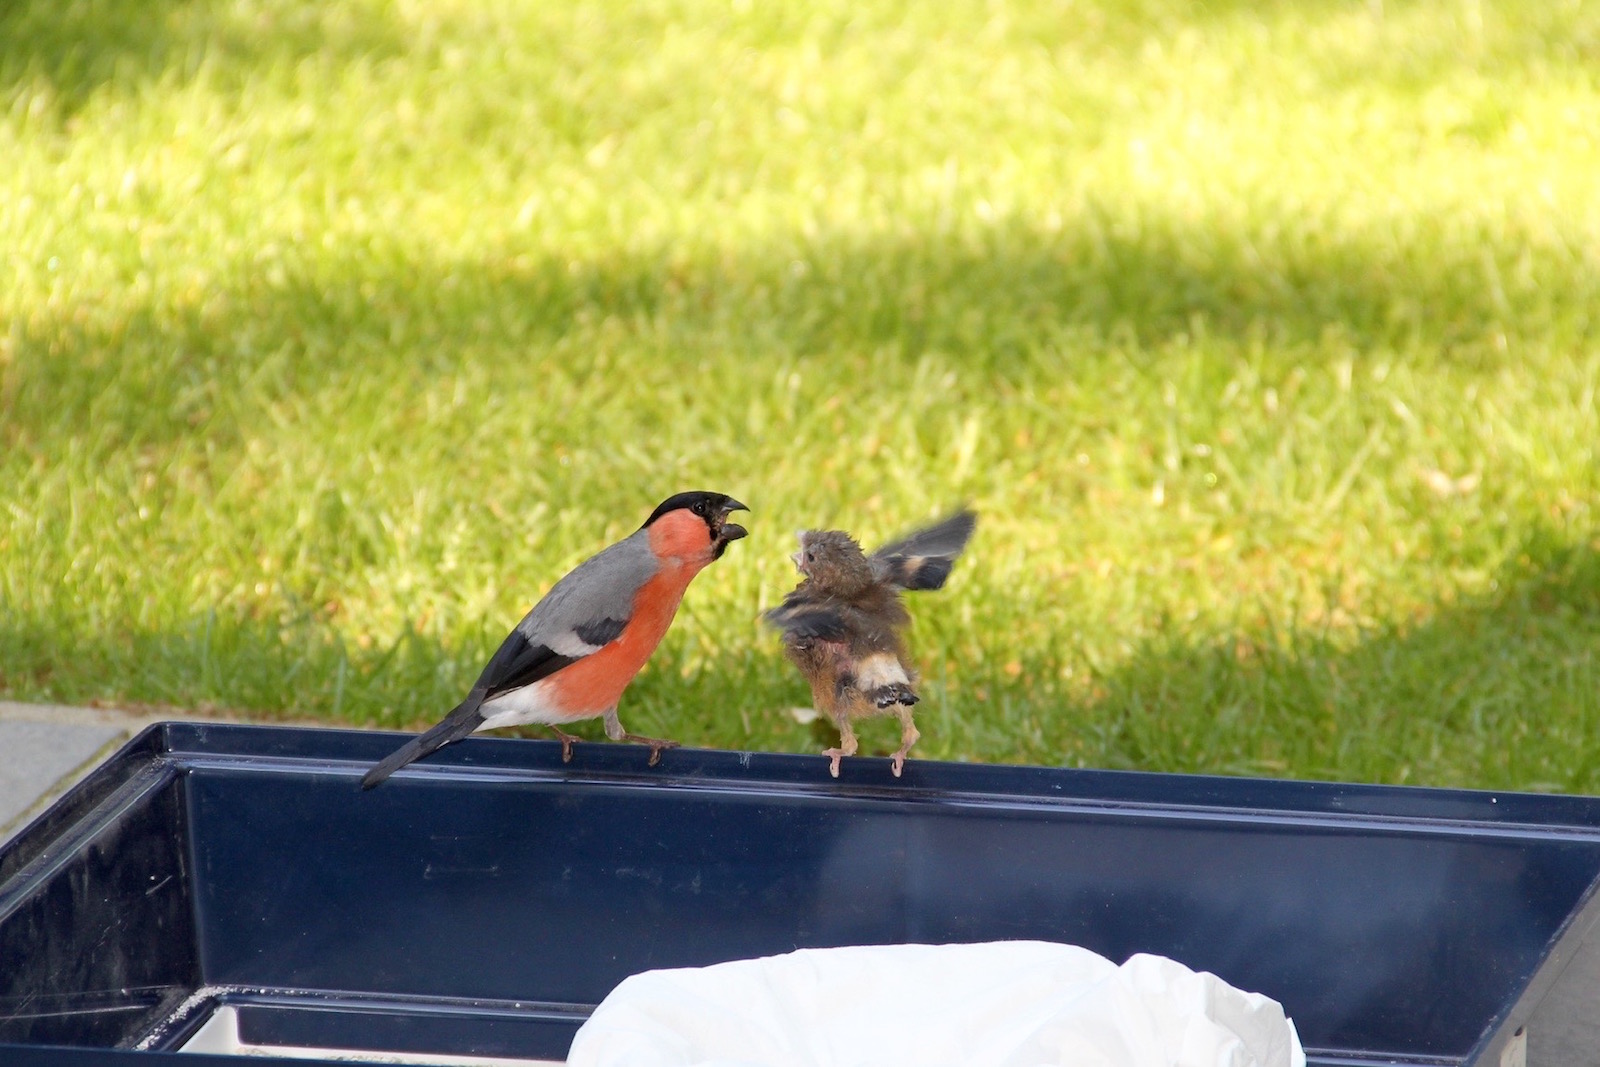 Der Gimpelvater füttert sein Vogelkind auf dem Bodenkasten des Vogelkäfigs